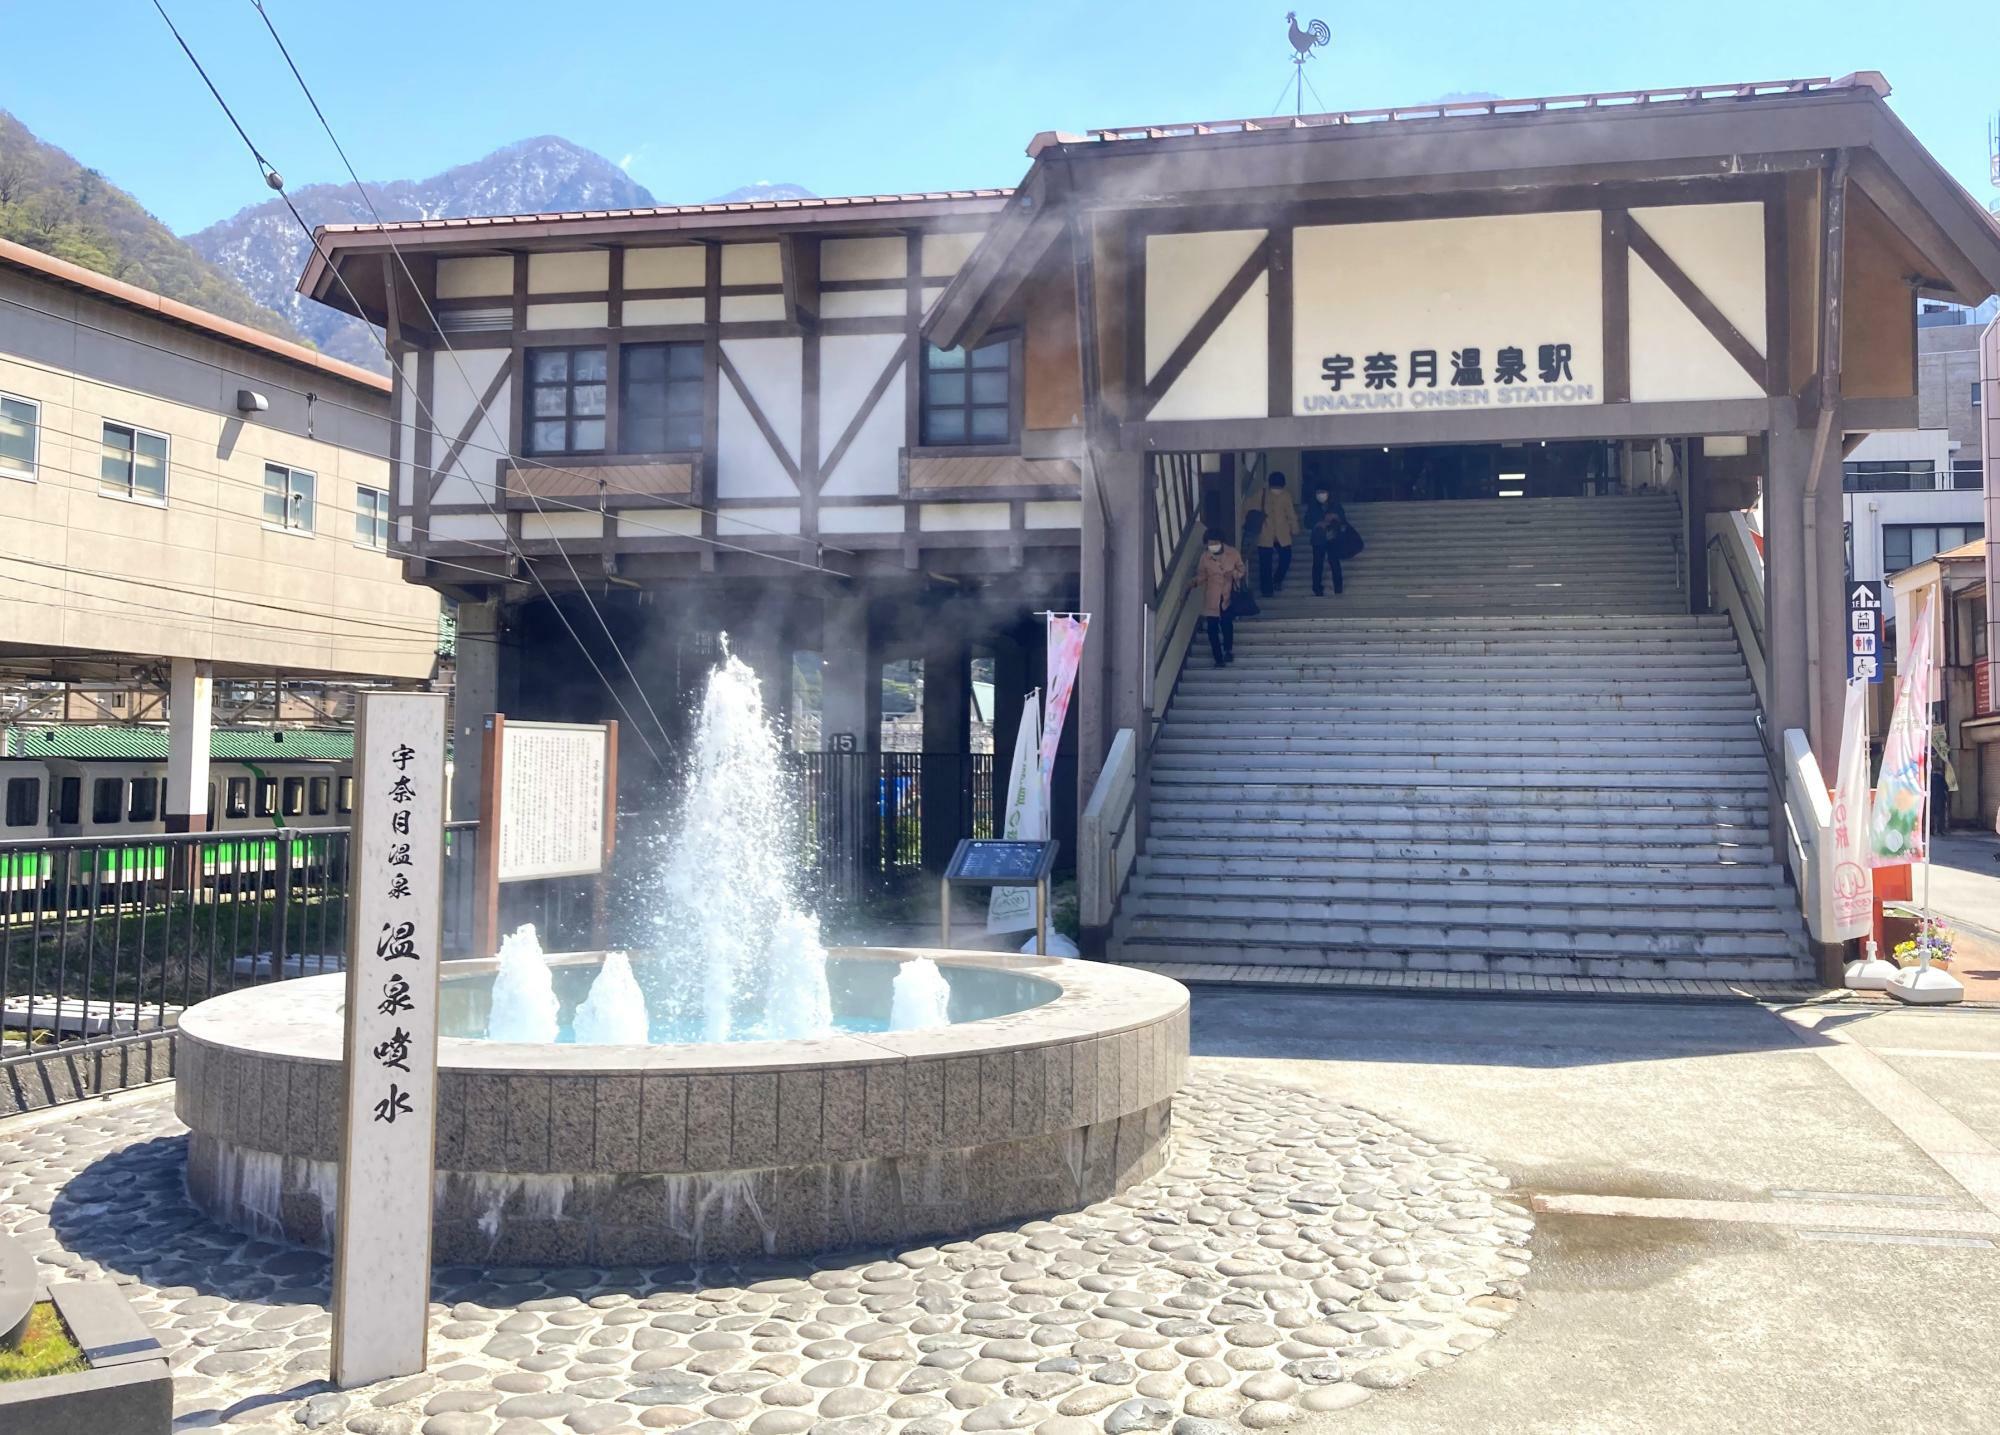 富山地方鉄道の終点「宇奈月温泉駅」前にある温泉噴水